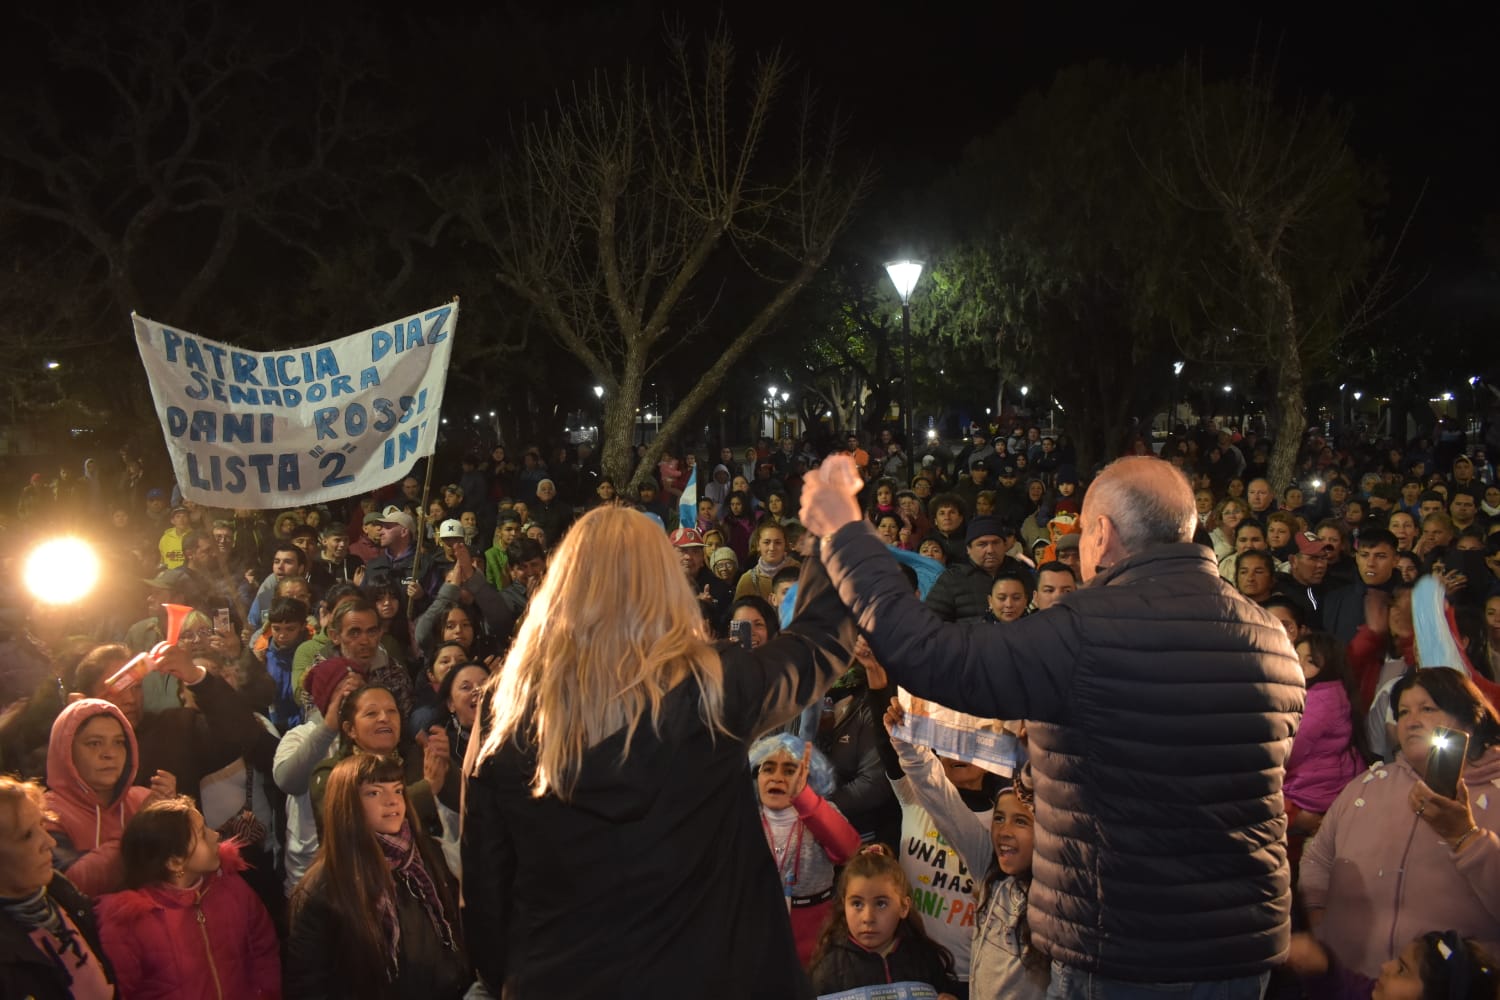 Gran elección de Daniel Rossi y Patricia Díaz: son los candidatos más votados para Intendente de Santa Elena y senadora del departamento La Paz.